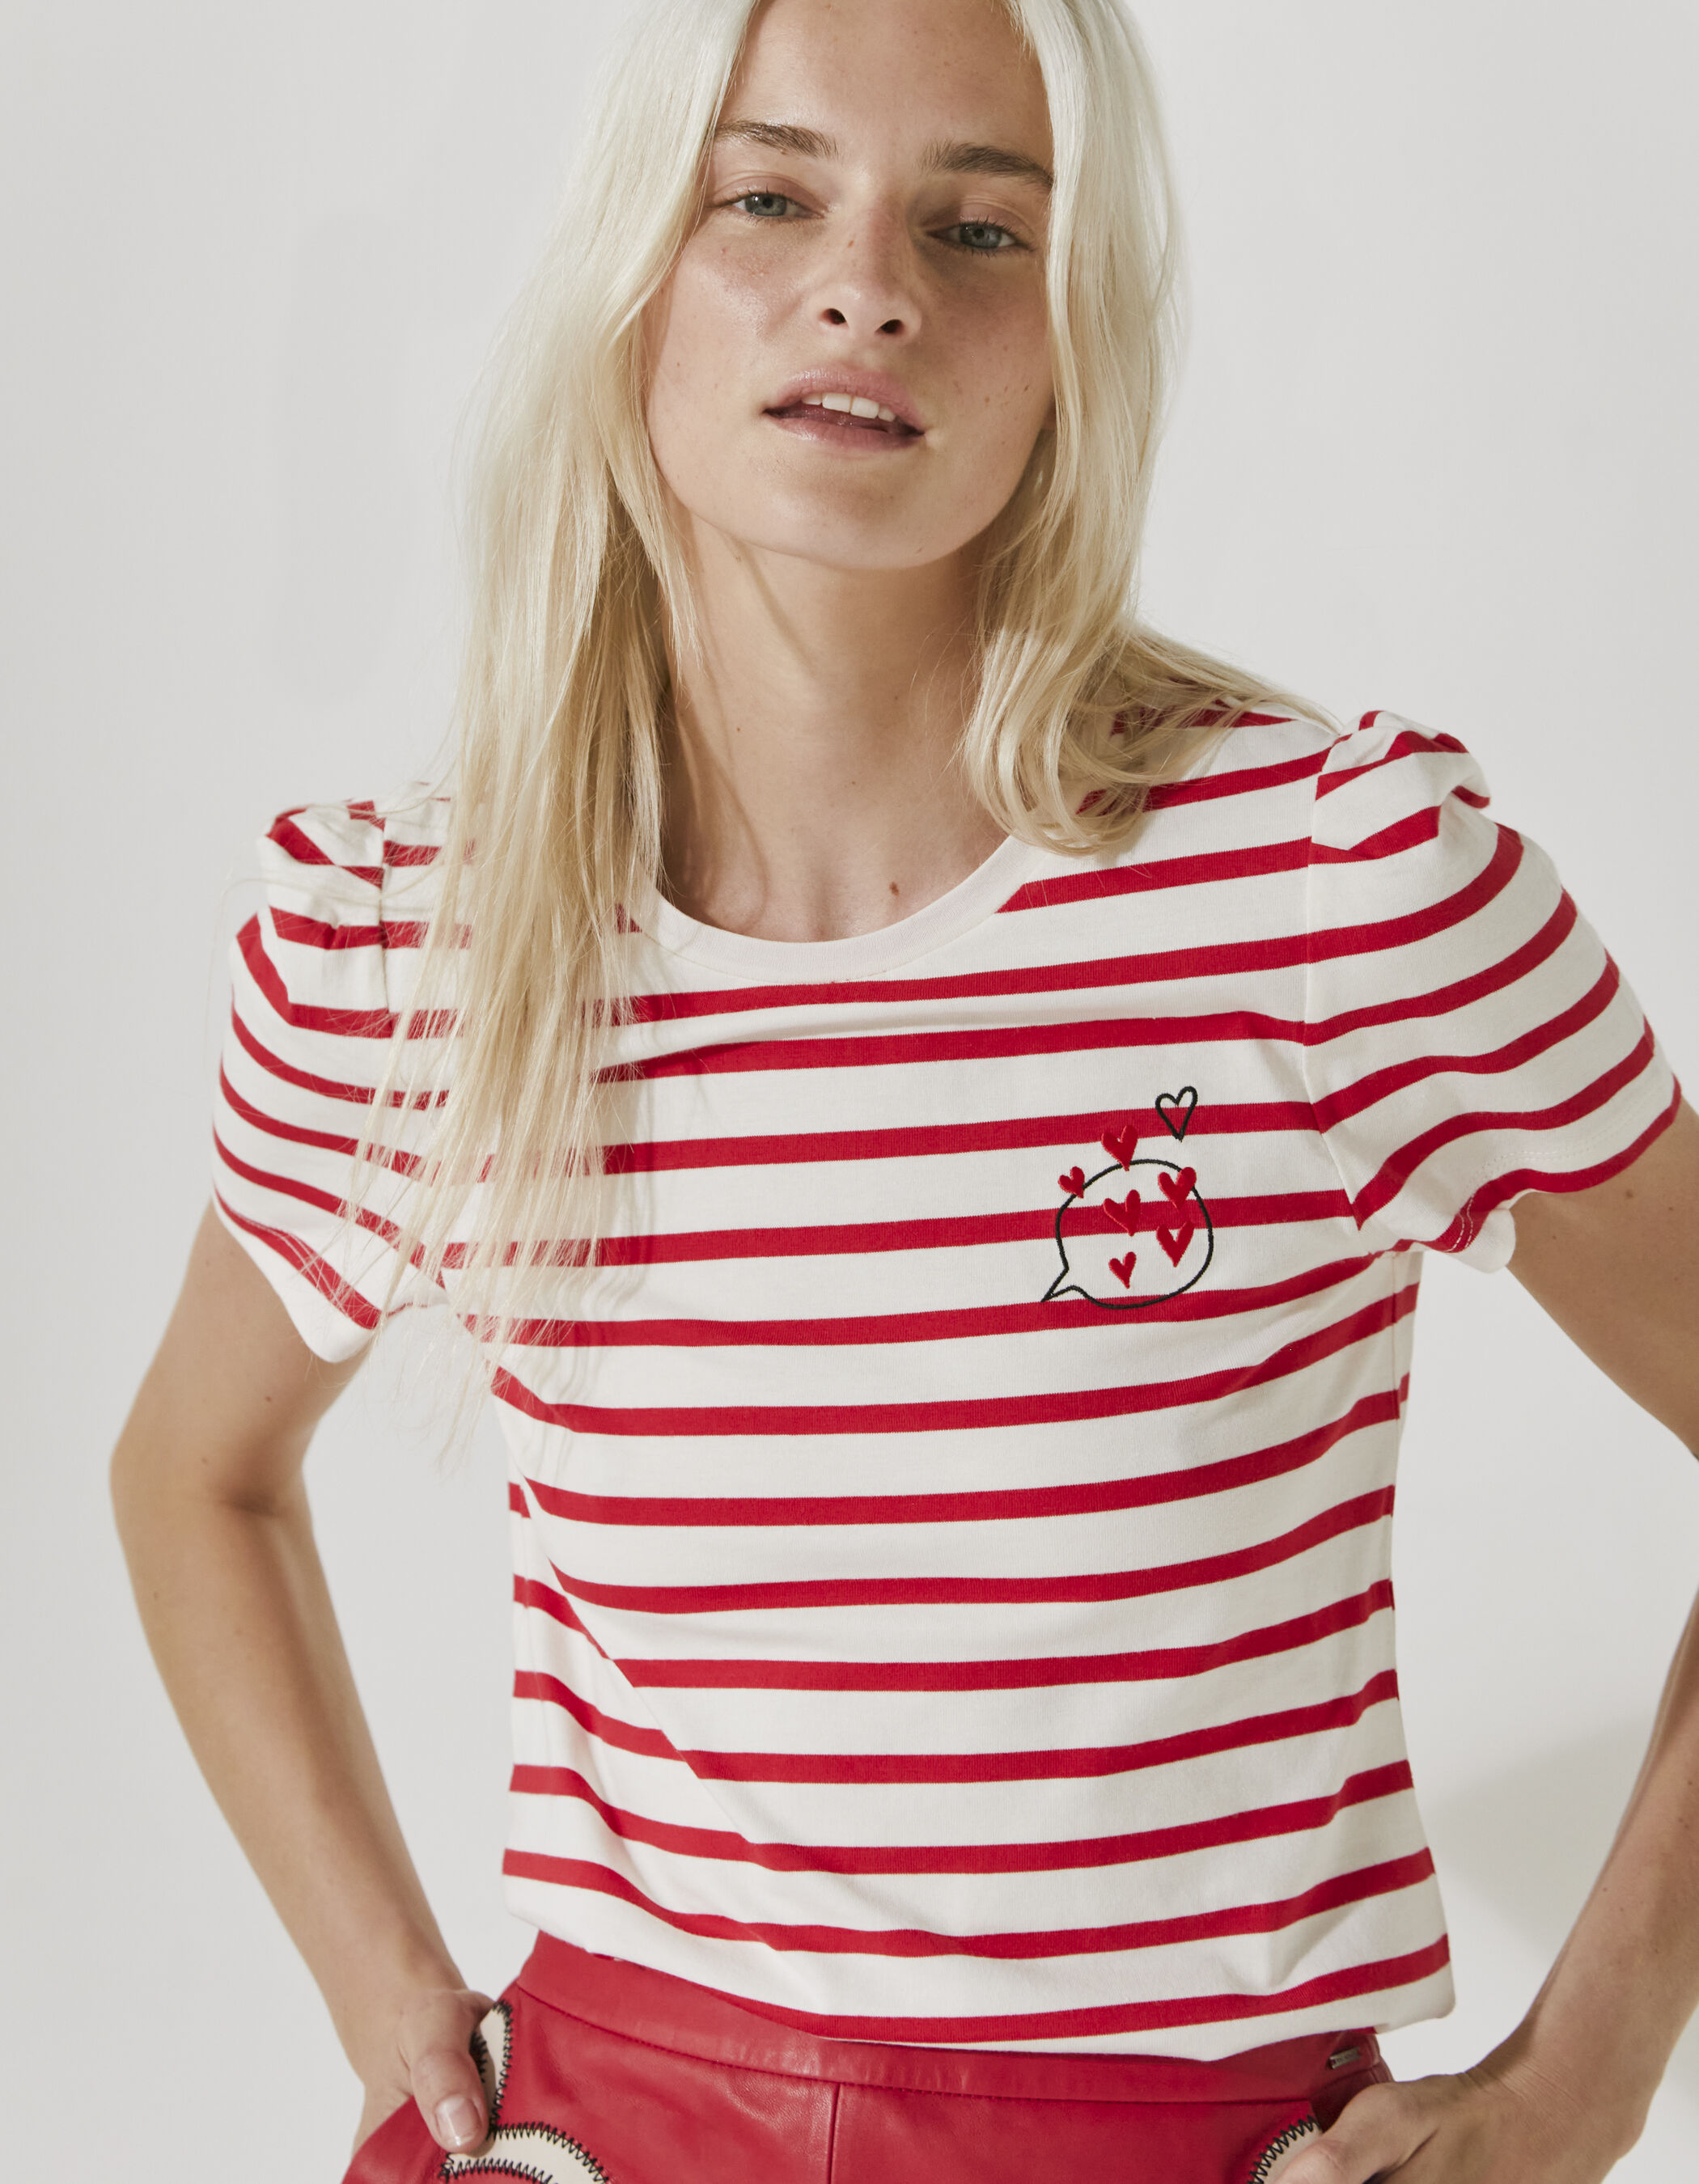 Women's sailor stripe-style cotton T-shirt, chest badges